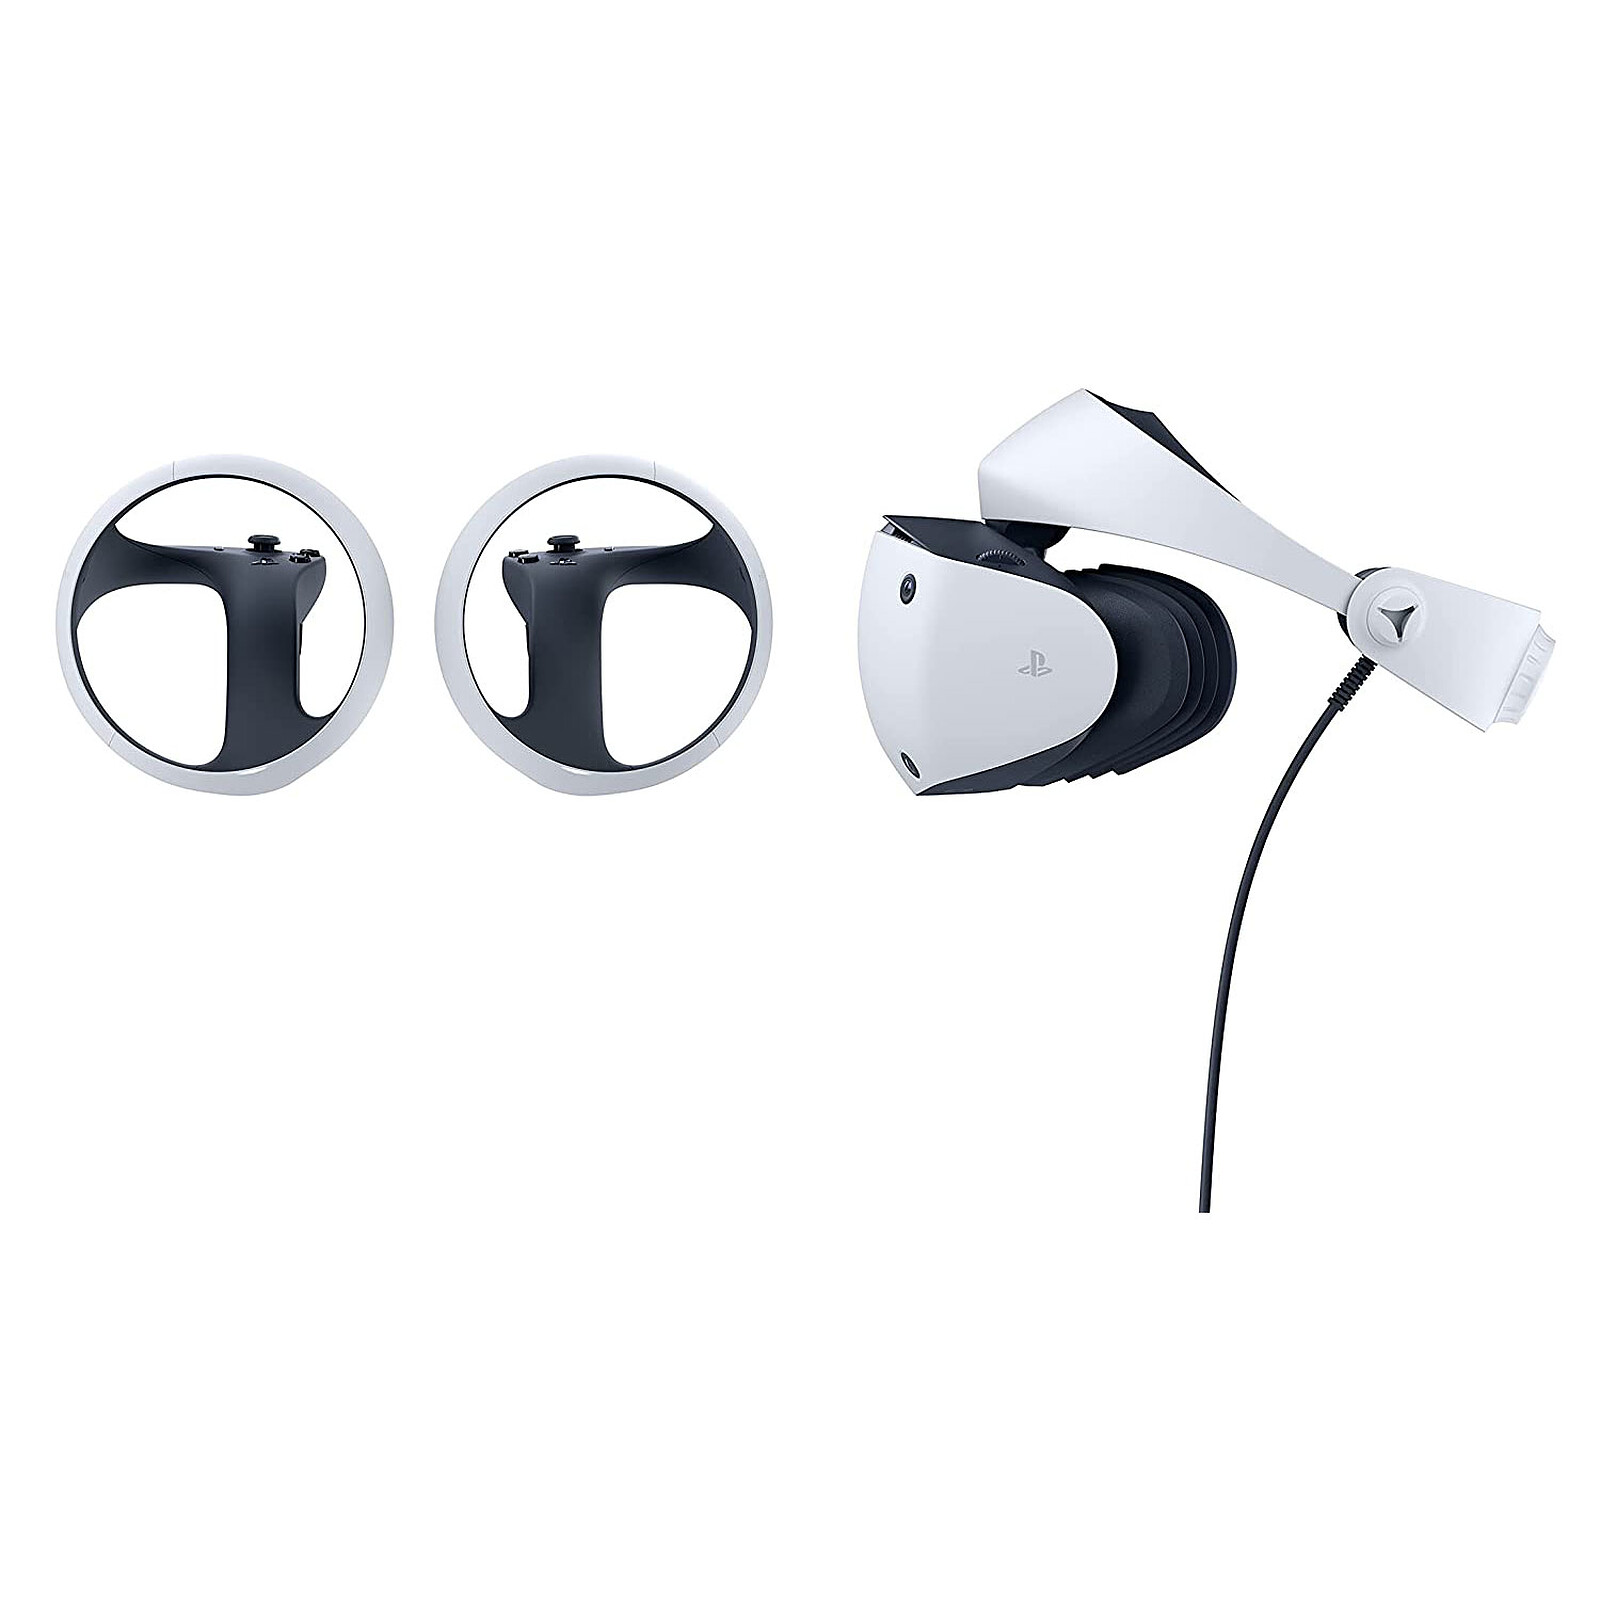 PlayStation VR, Vivez le jeu avec le casque PS VR